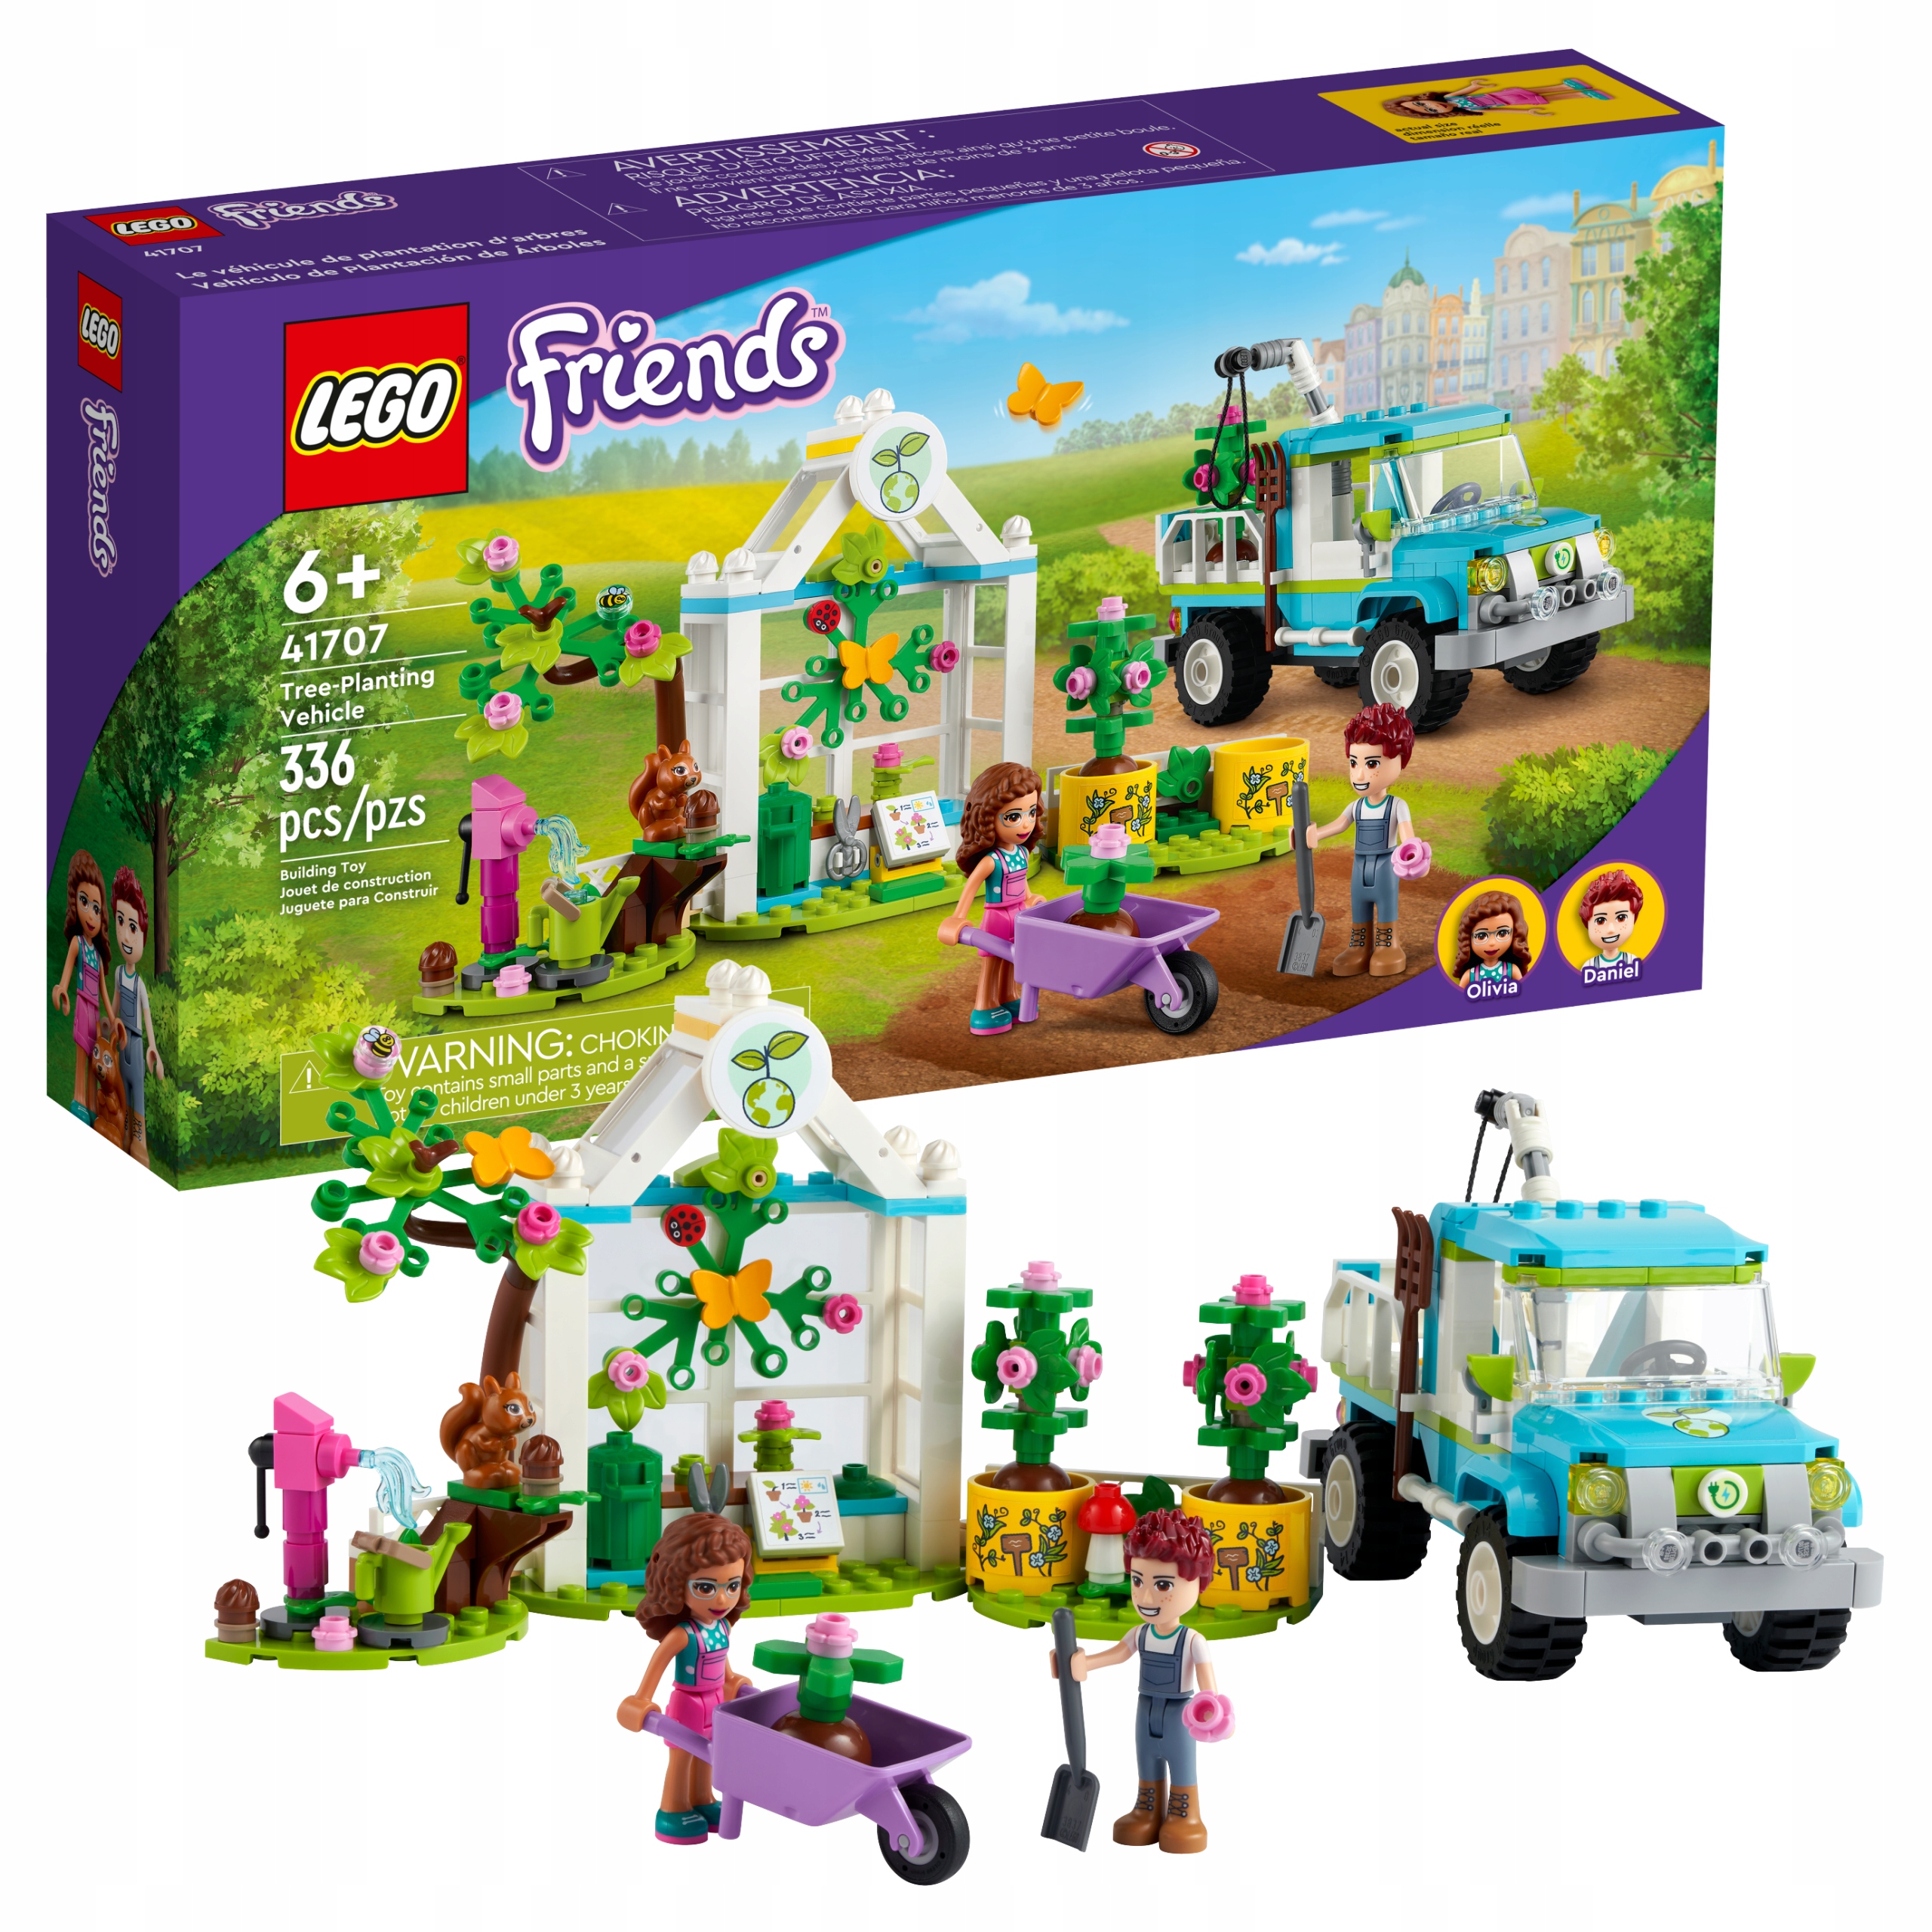 

Lego Friends 41707 Furgonetka do sadzenia drzew